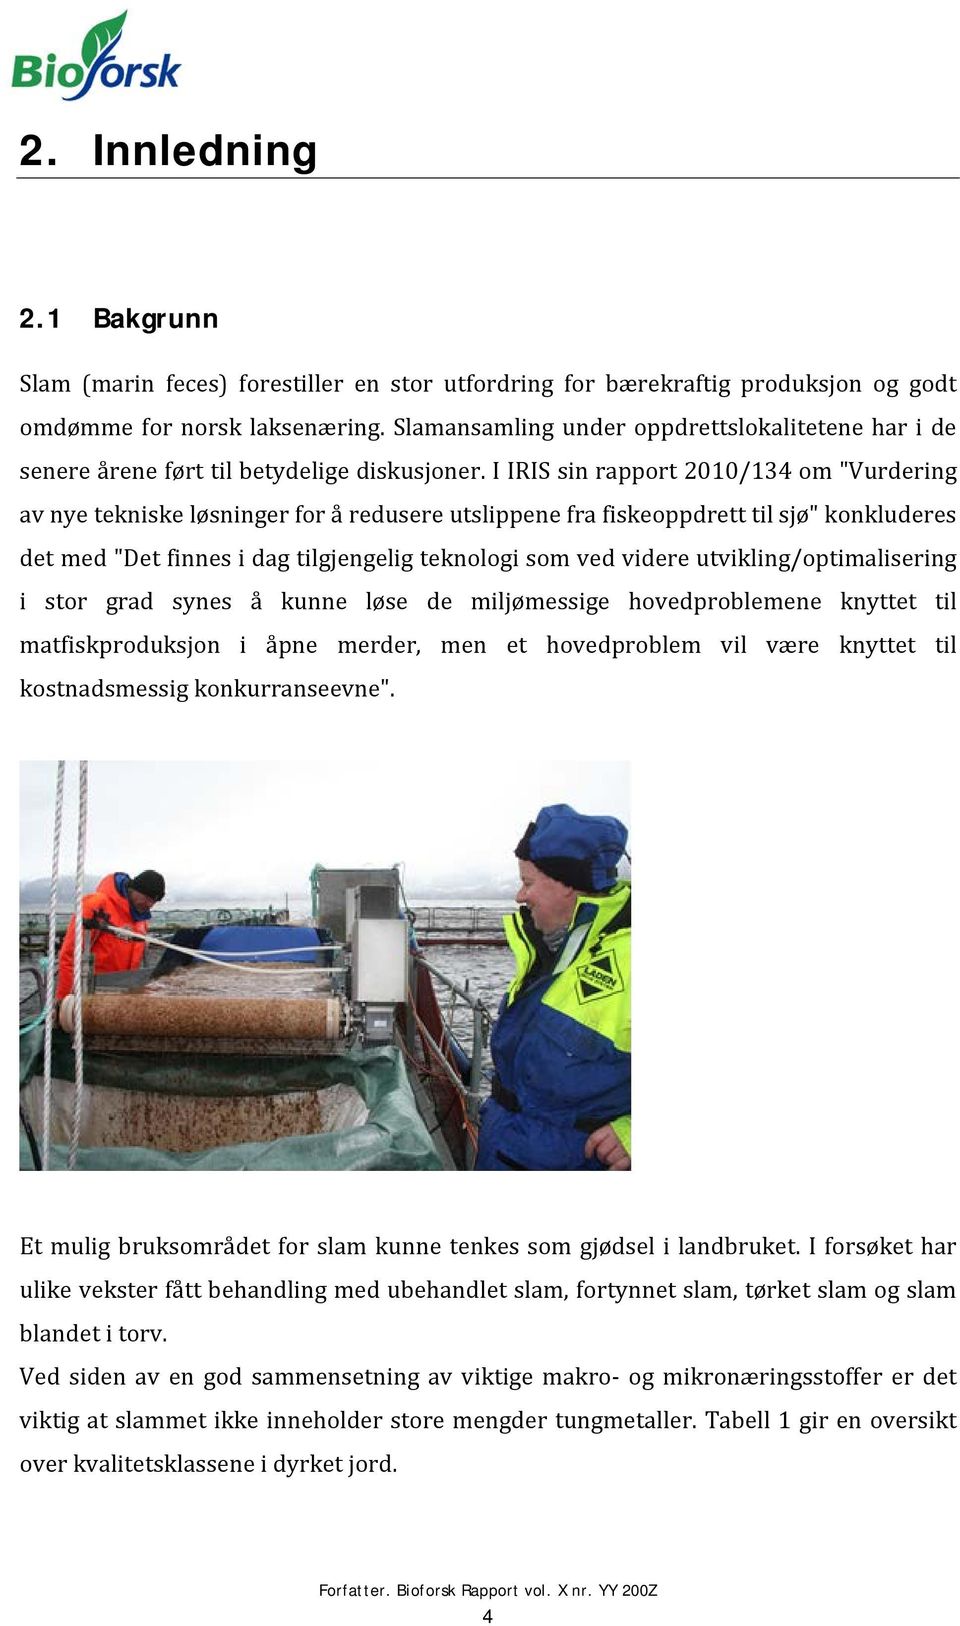 I IRIS sin rapport 2010/134 om "Vurdering av nye tekniske løsninger for å redusere utslippene fra fiskeoppdrett til sjø" konkluderes det med "Det finnes i dag tilgjengelig teknologi som ved videre